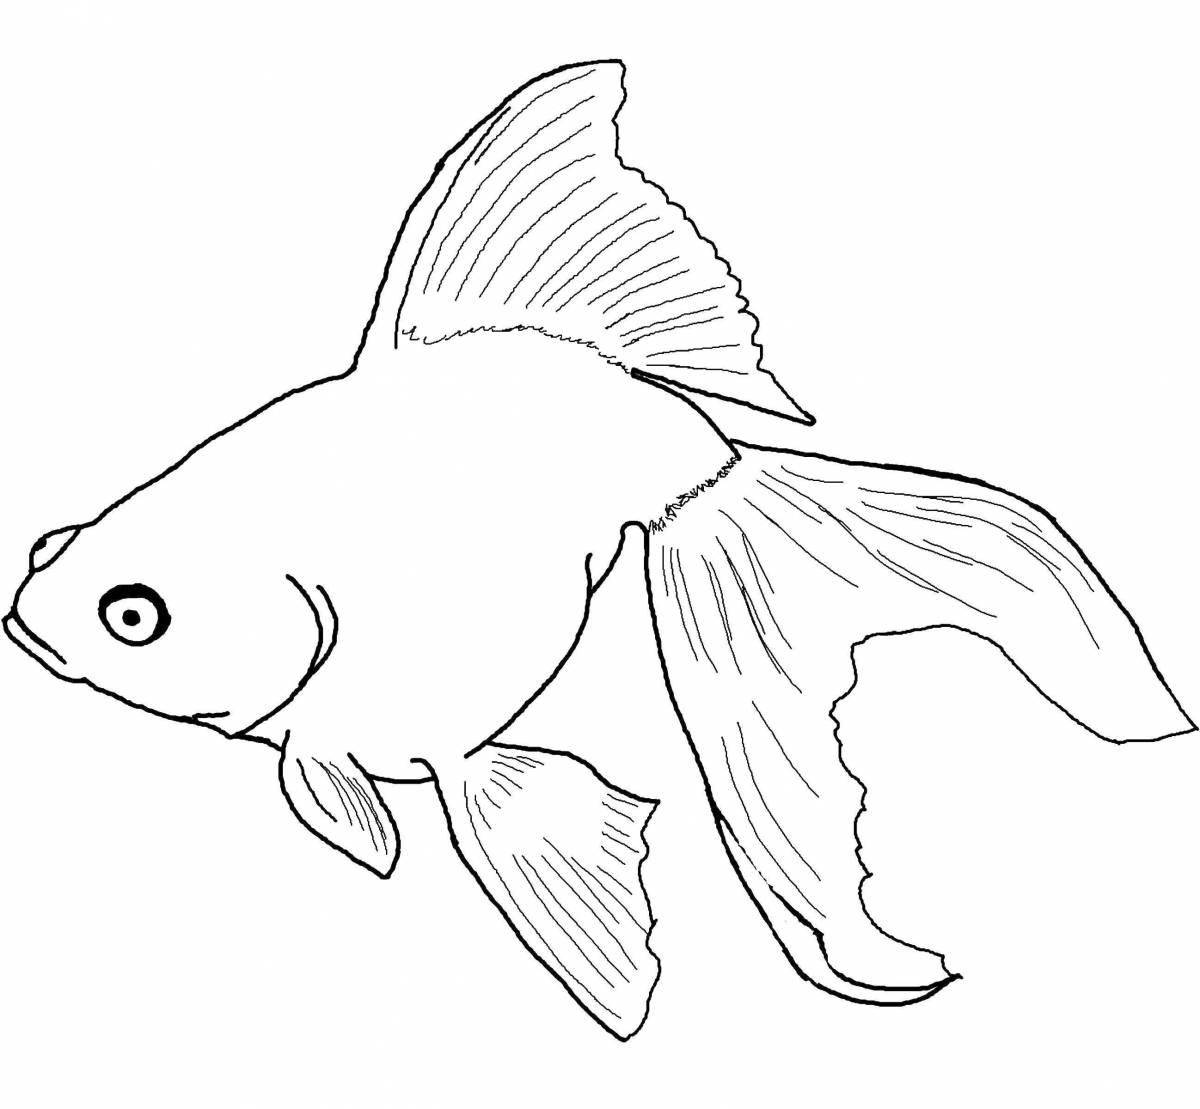 Привлекательная аквариумная рыбка-раскраска для детей